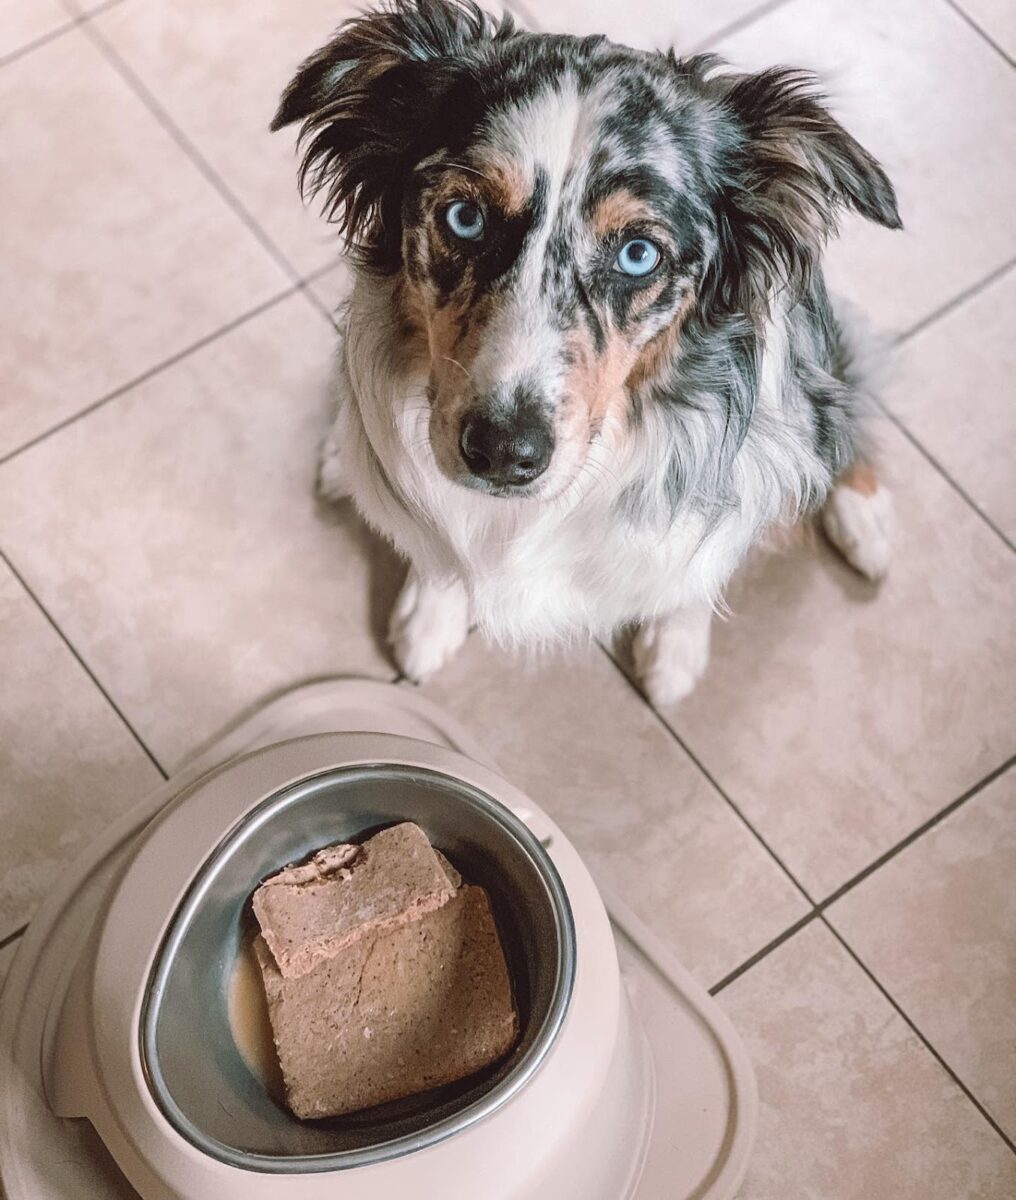 Dog looking at camera with dish of food